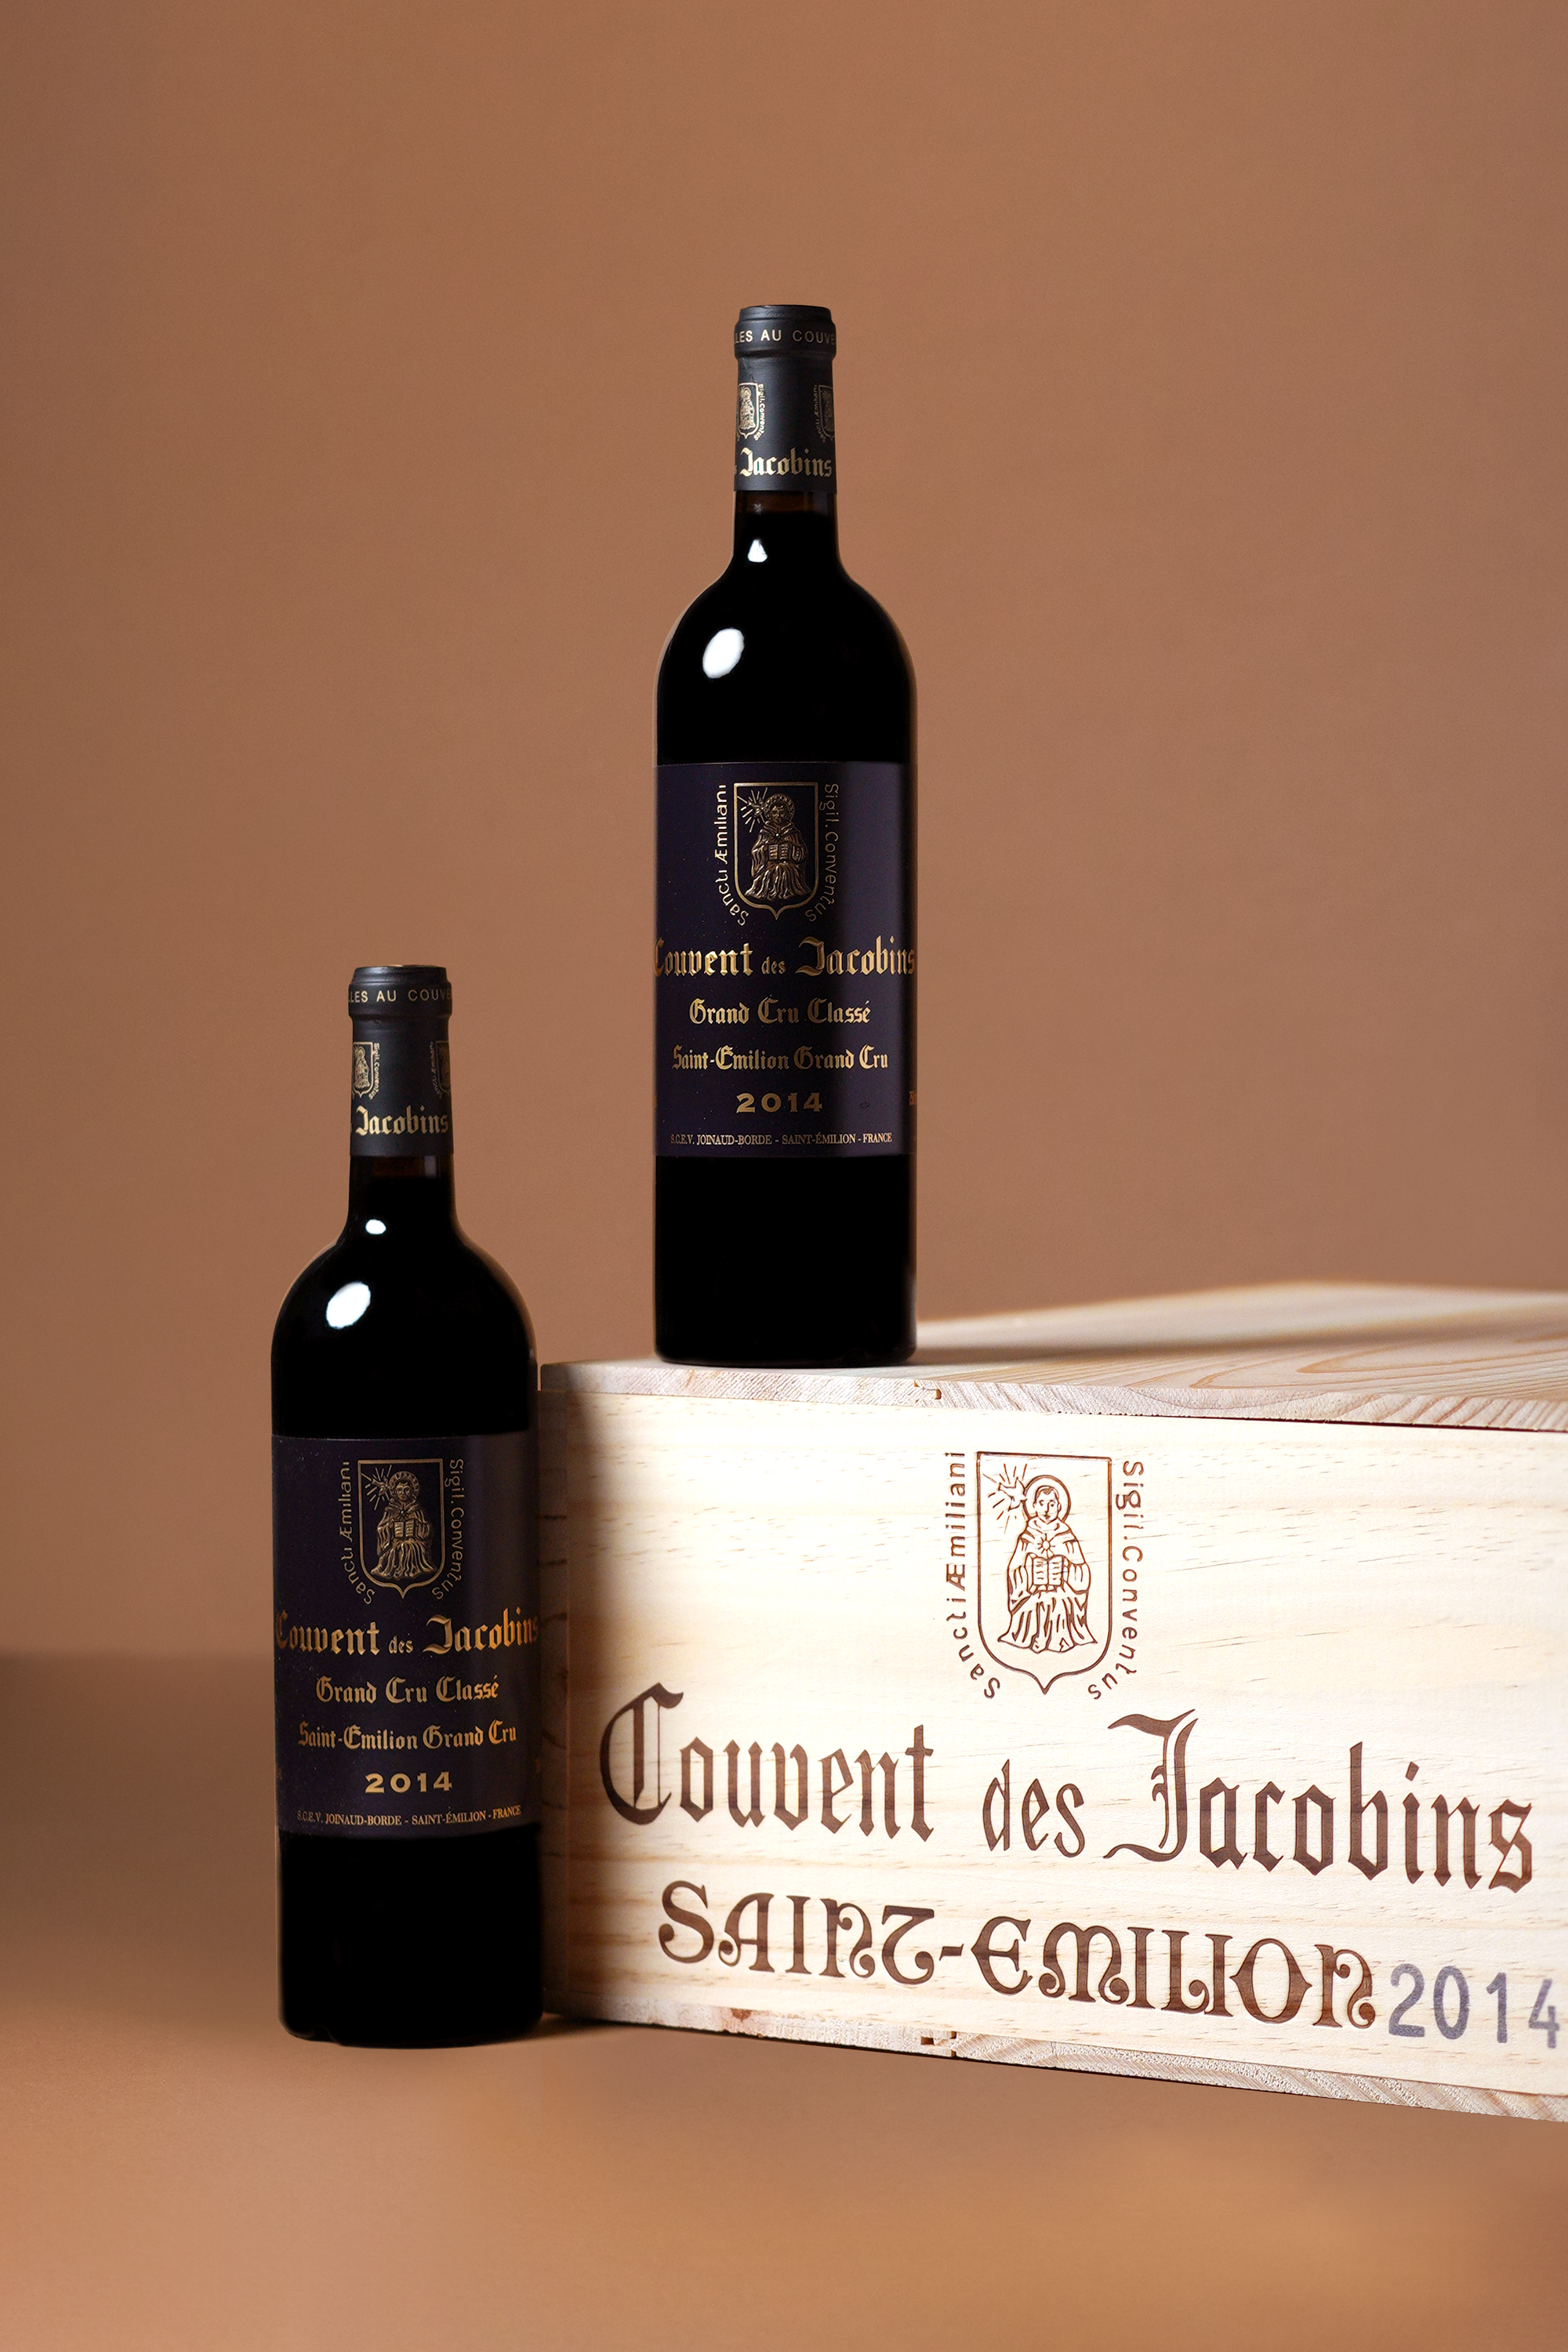 Couvent des Jacobins - Saint Emilion 2014 (OWC of 12 bottles)